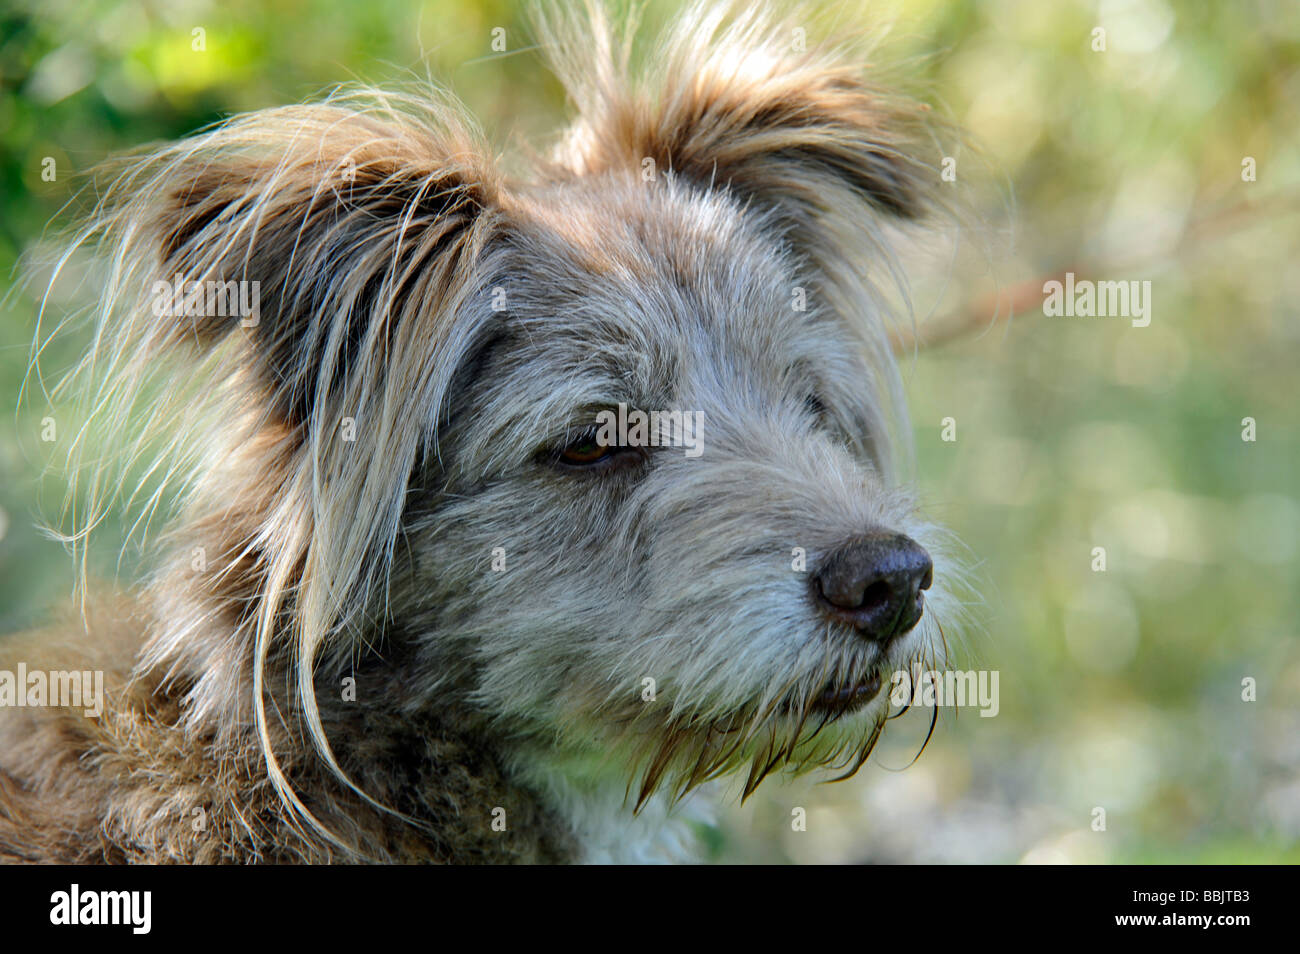 Carino, morbido, insolito cane k9 in posizione rilassata con adorabili orecchie soffici ma allerta e attraente come migliore amico dell'uomo Foto Stock